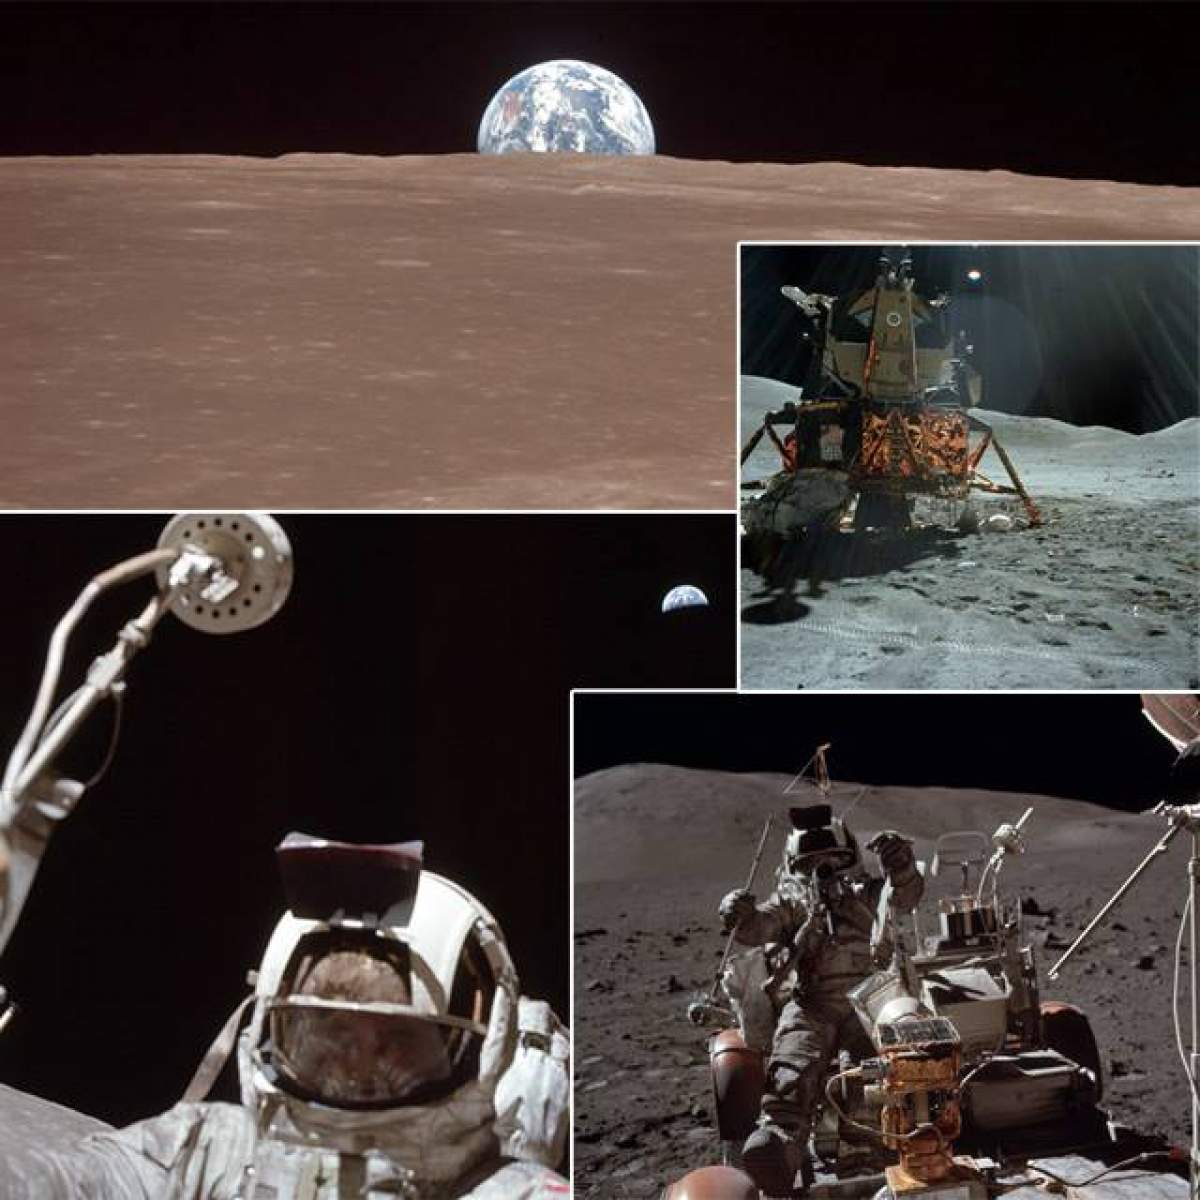 După mii de teorii conspiraționale, NASA a publicat 10.000 de fotografii din timpul misiunii Apollo. GALERIE FOTO IMPRESIONANTĂ